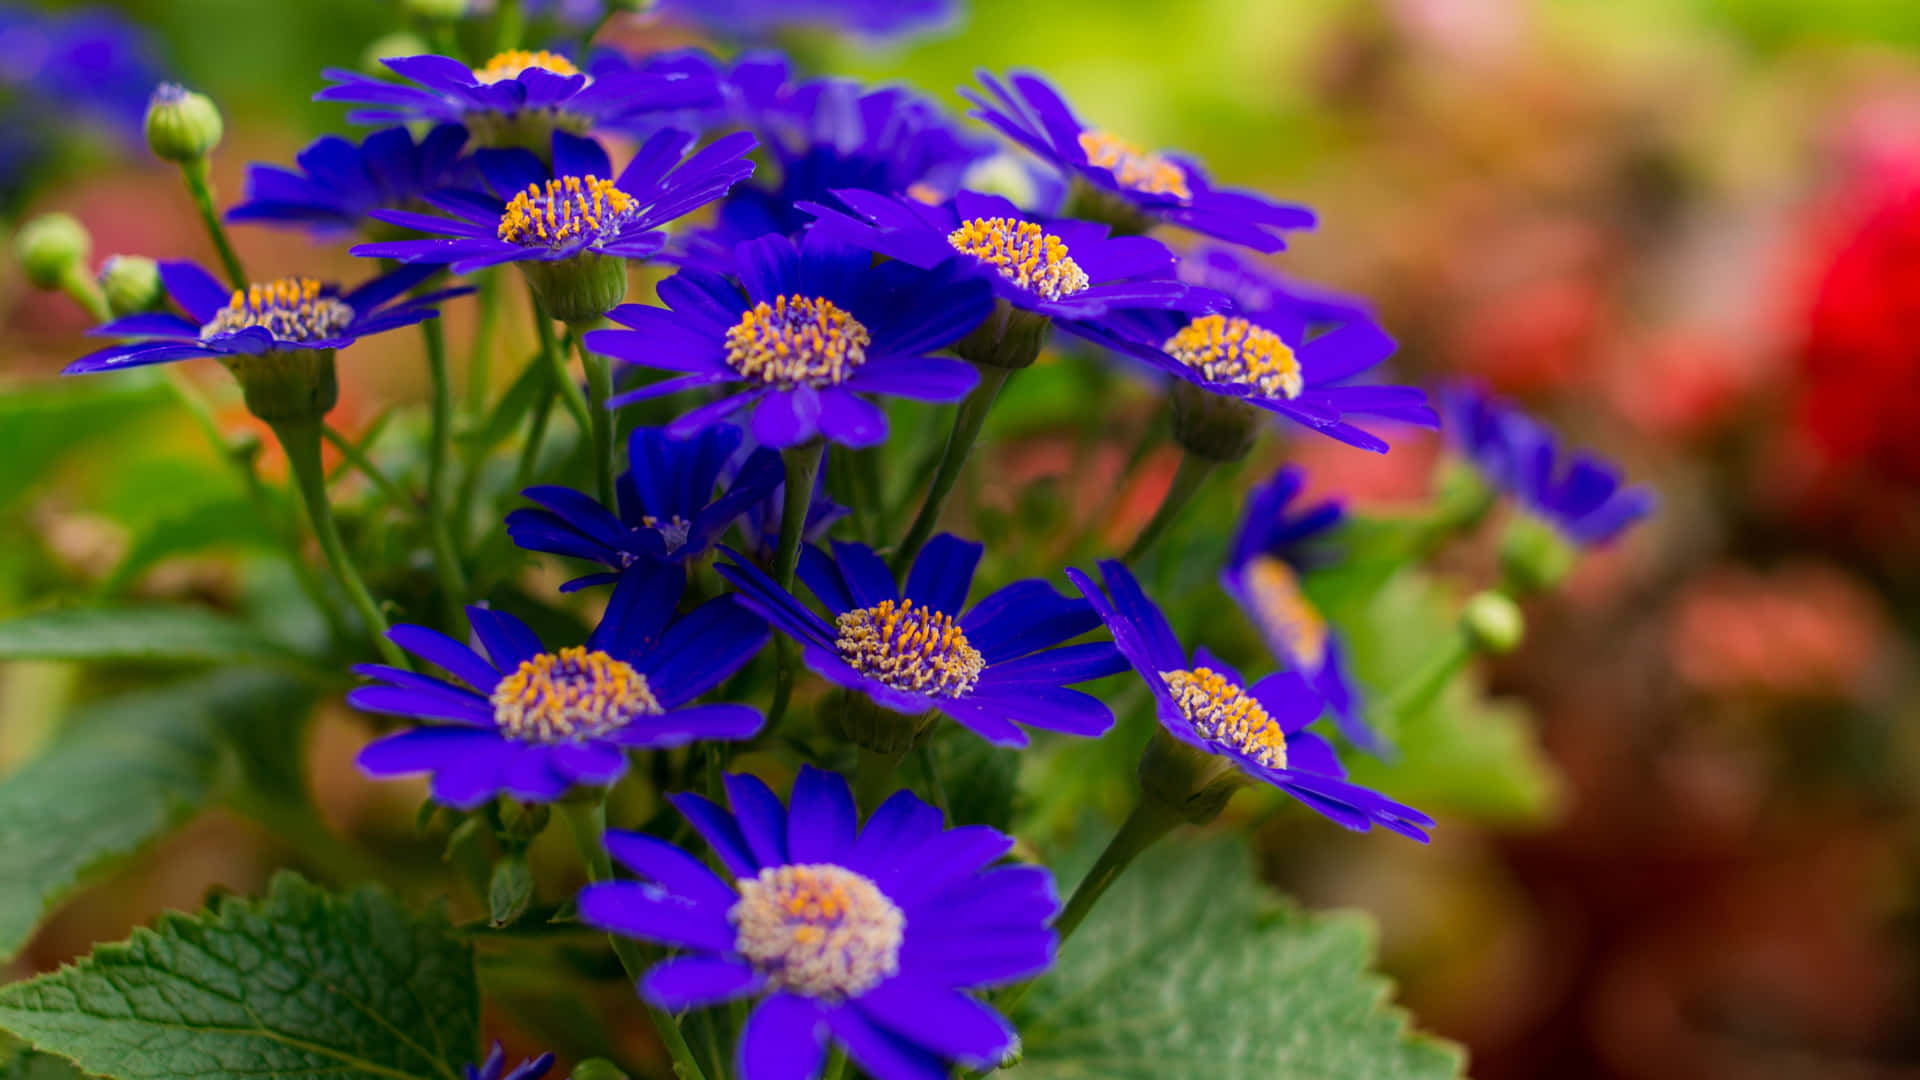 Imagende Flores Azul Oscuro Con Hojas Verdes.